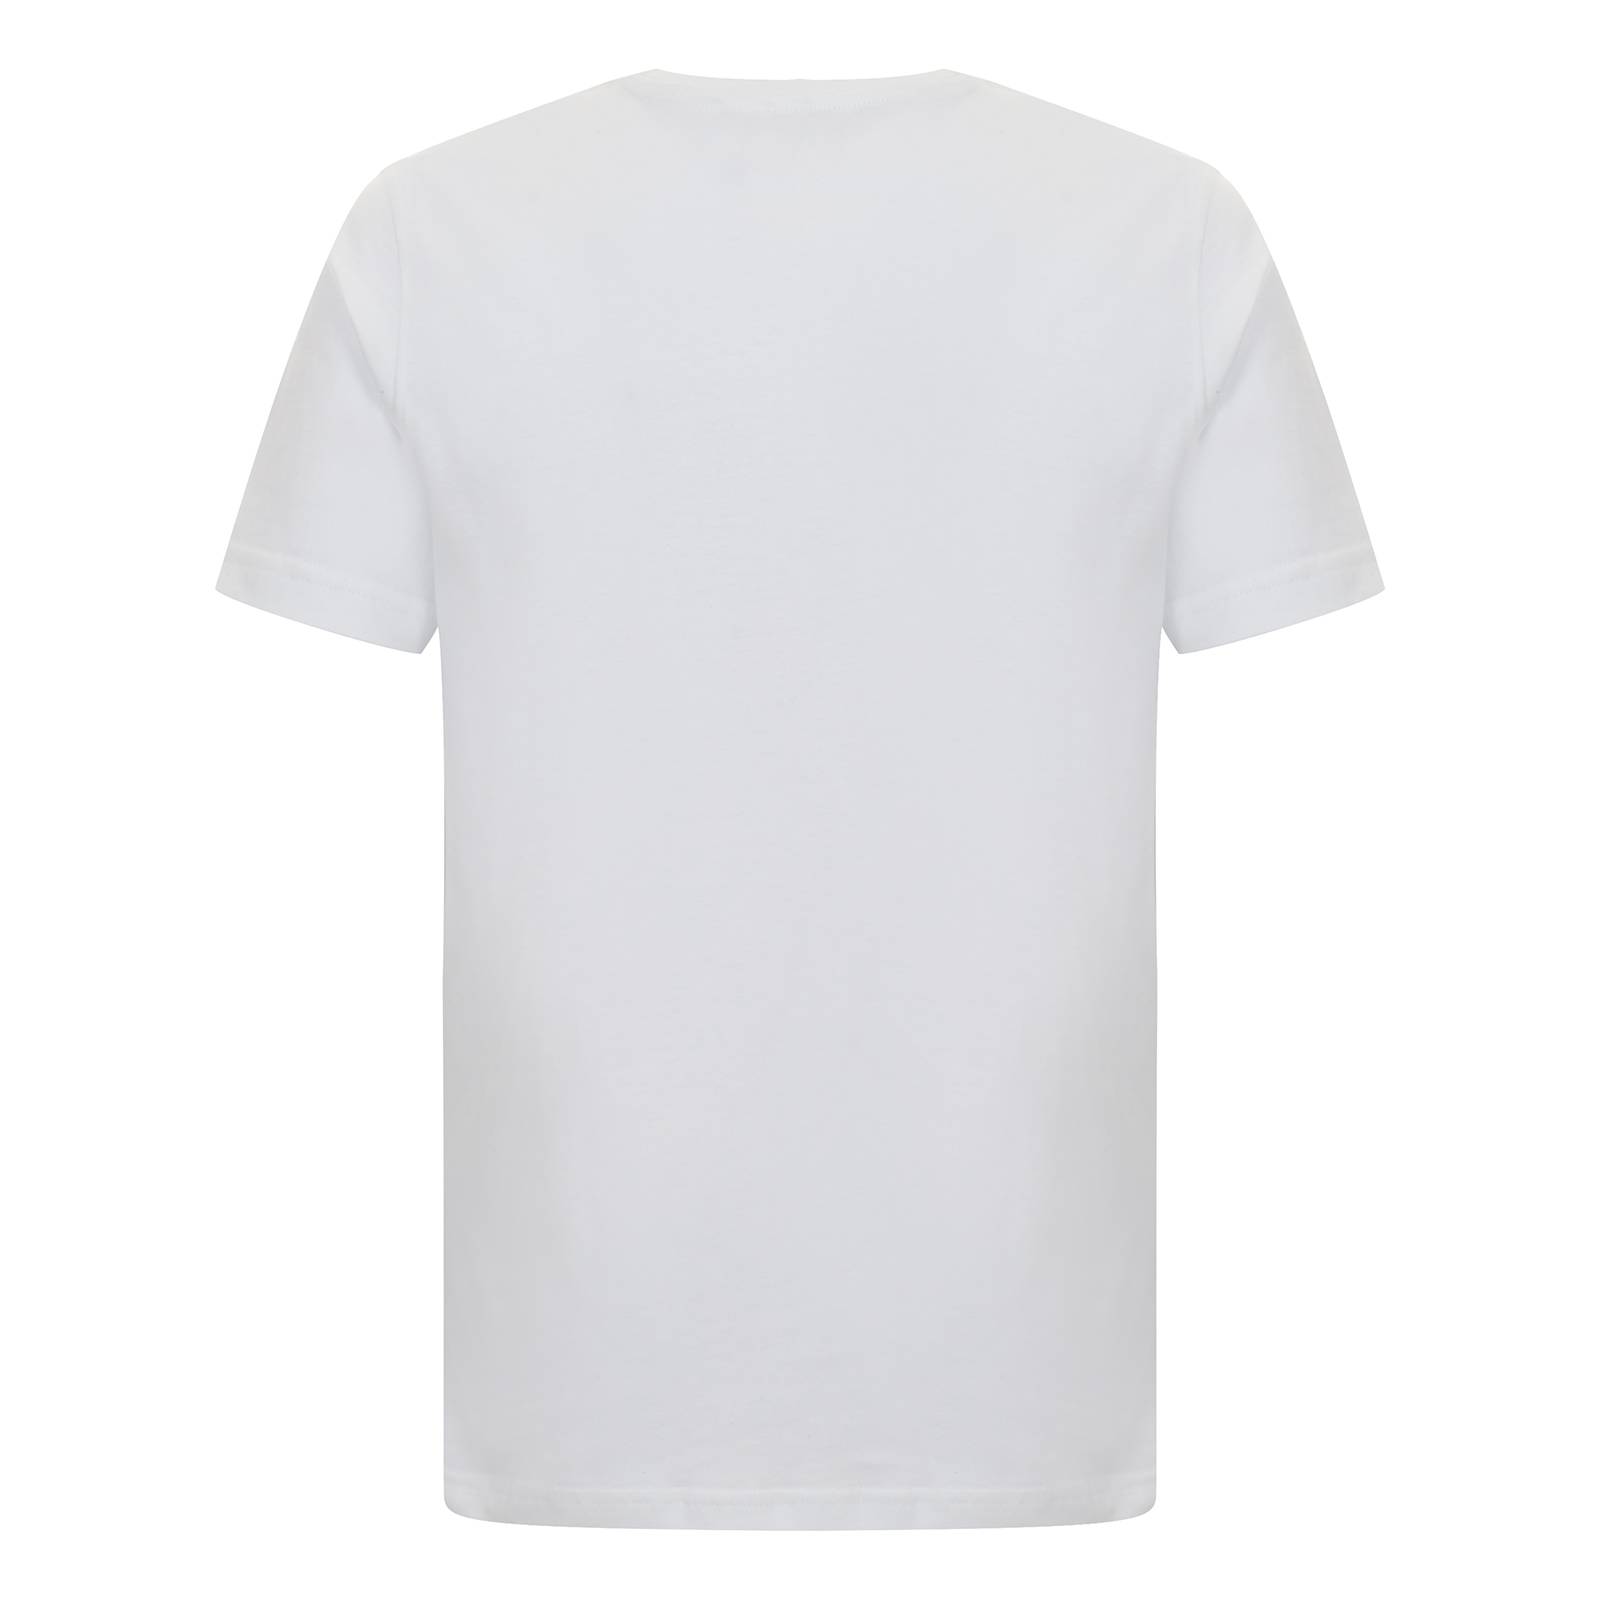 Однотонная мужская футболка с коротким рукавом Vincent, белая, бренда MERC, купить на официальном сайте со СКИДКОЙ!